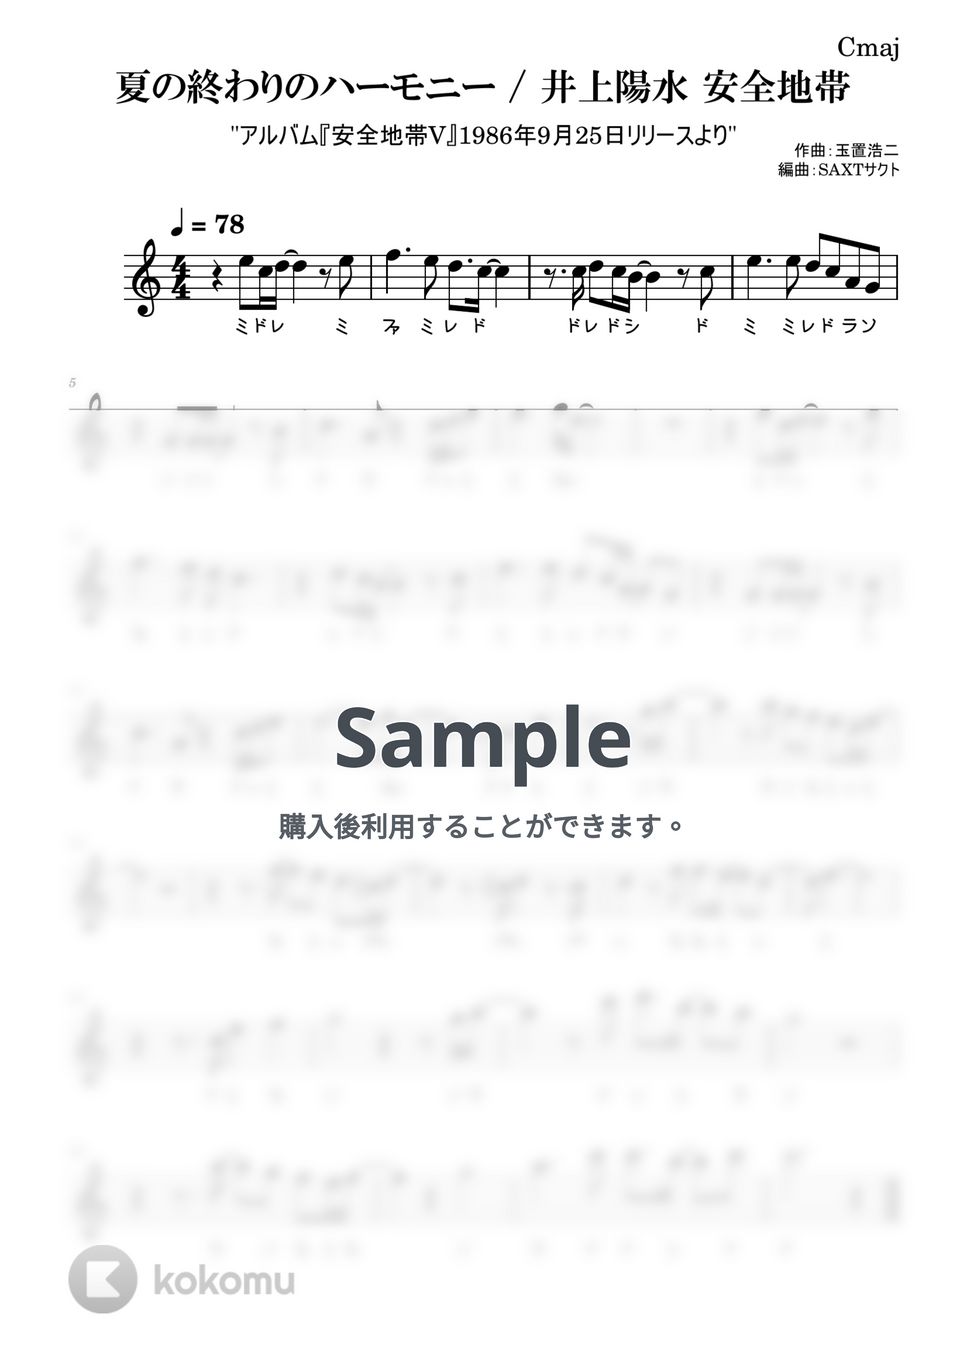 井上陽水 安全地帯 - 夏の終わりのハーモニー (めちゃラク譜) by SAXT